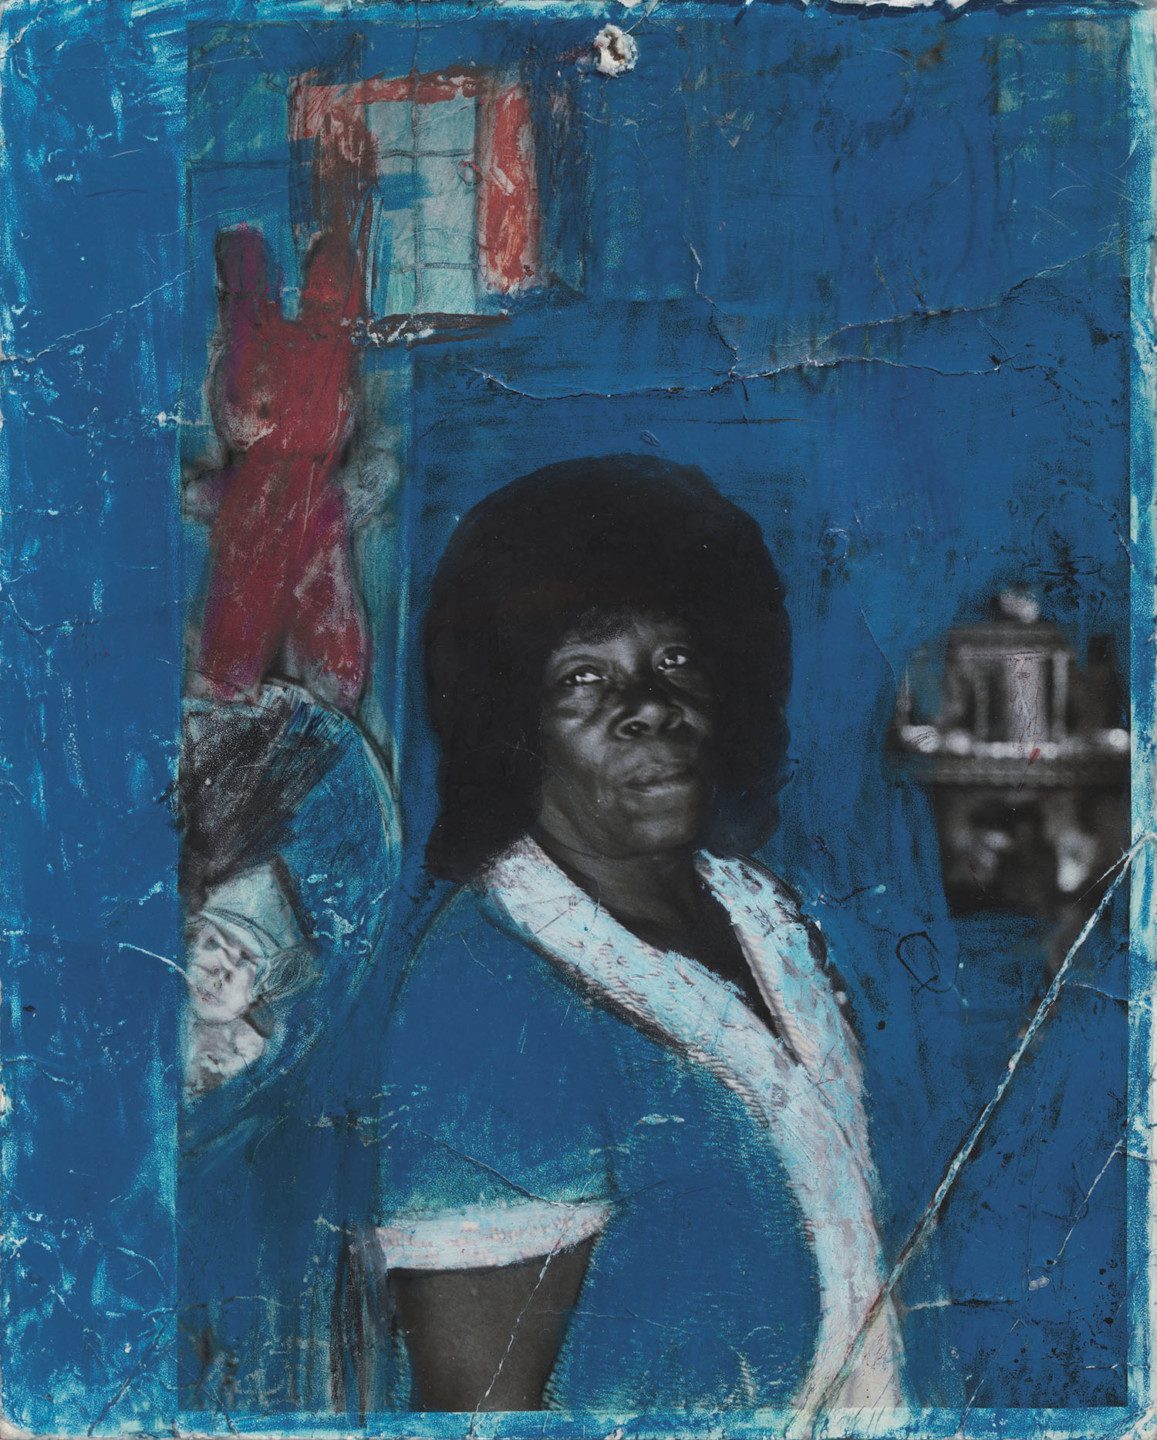  Ett svartvitt foto av en person som tittar mot kameran, med blå och röd färg som omger den